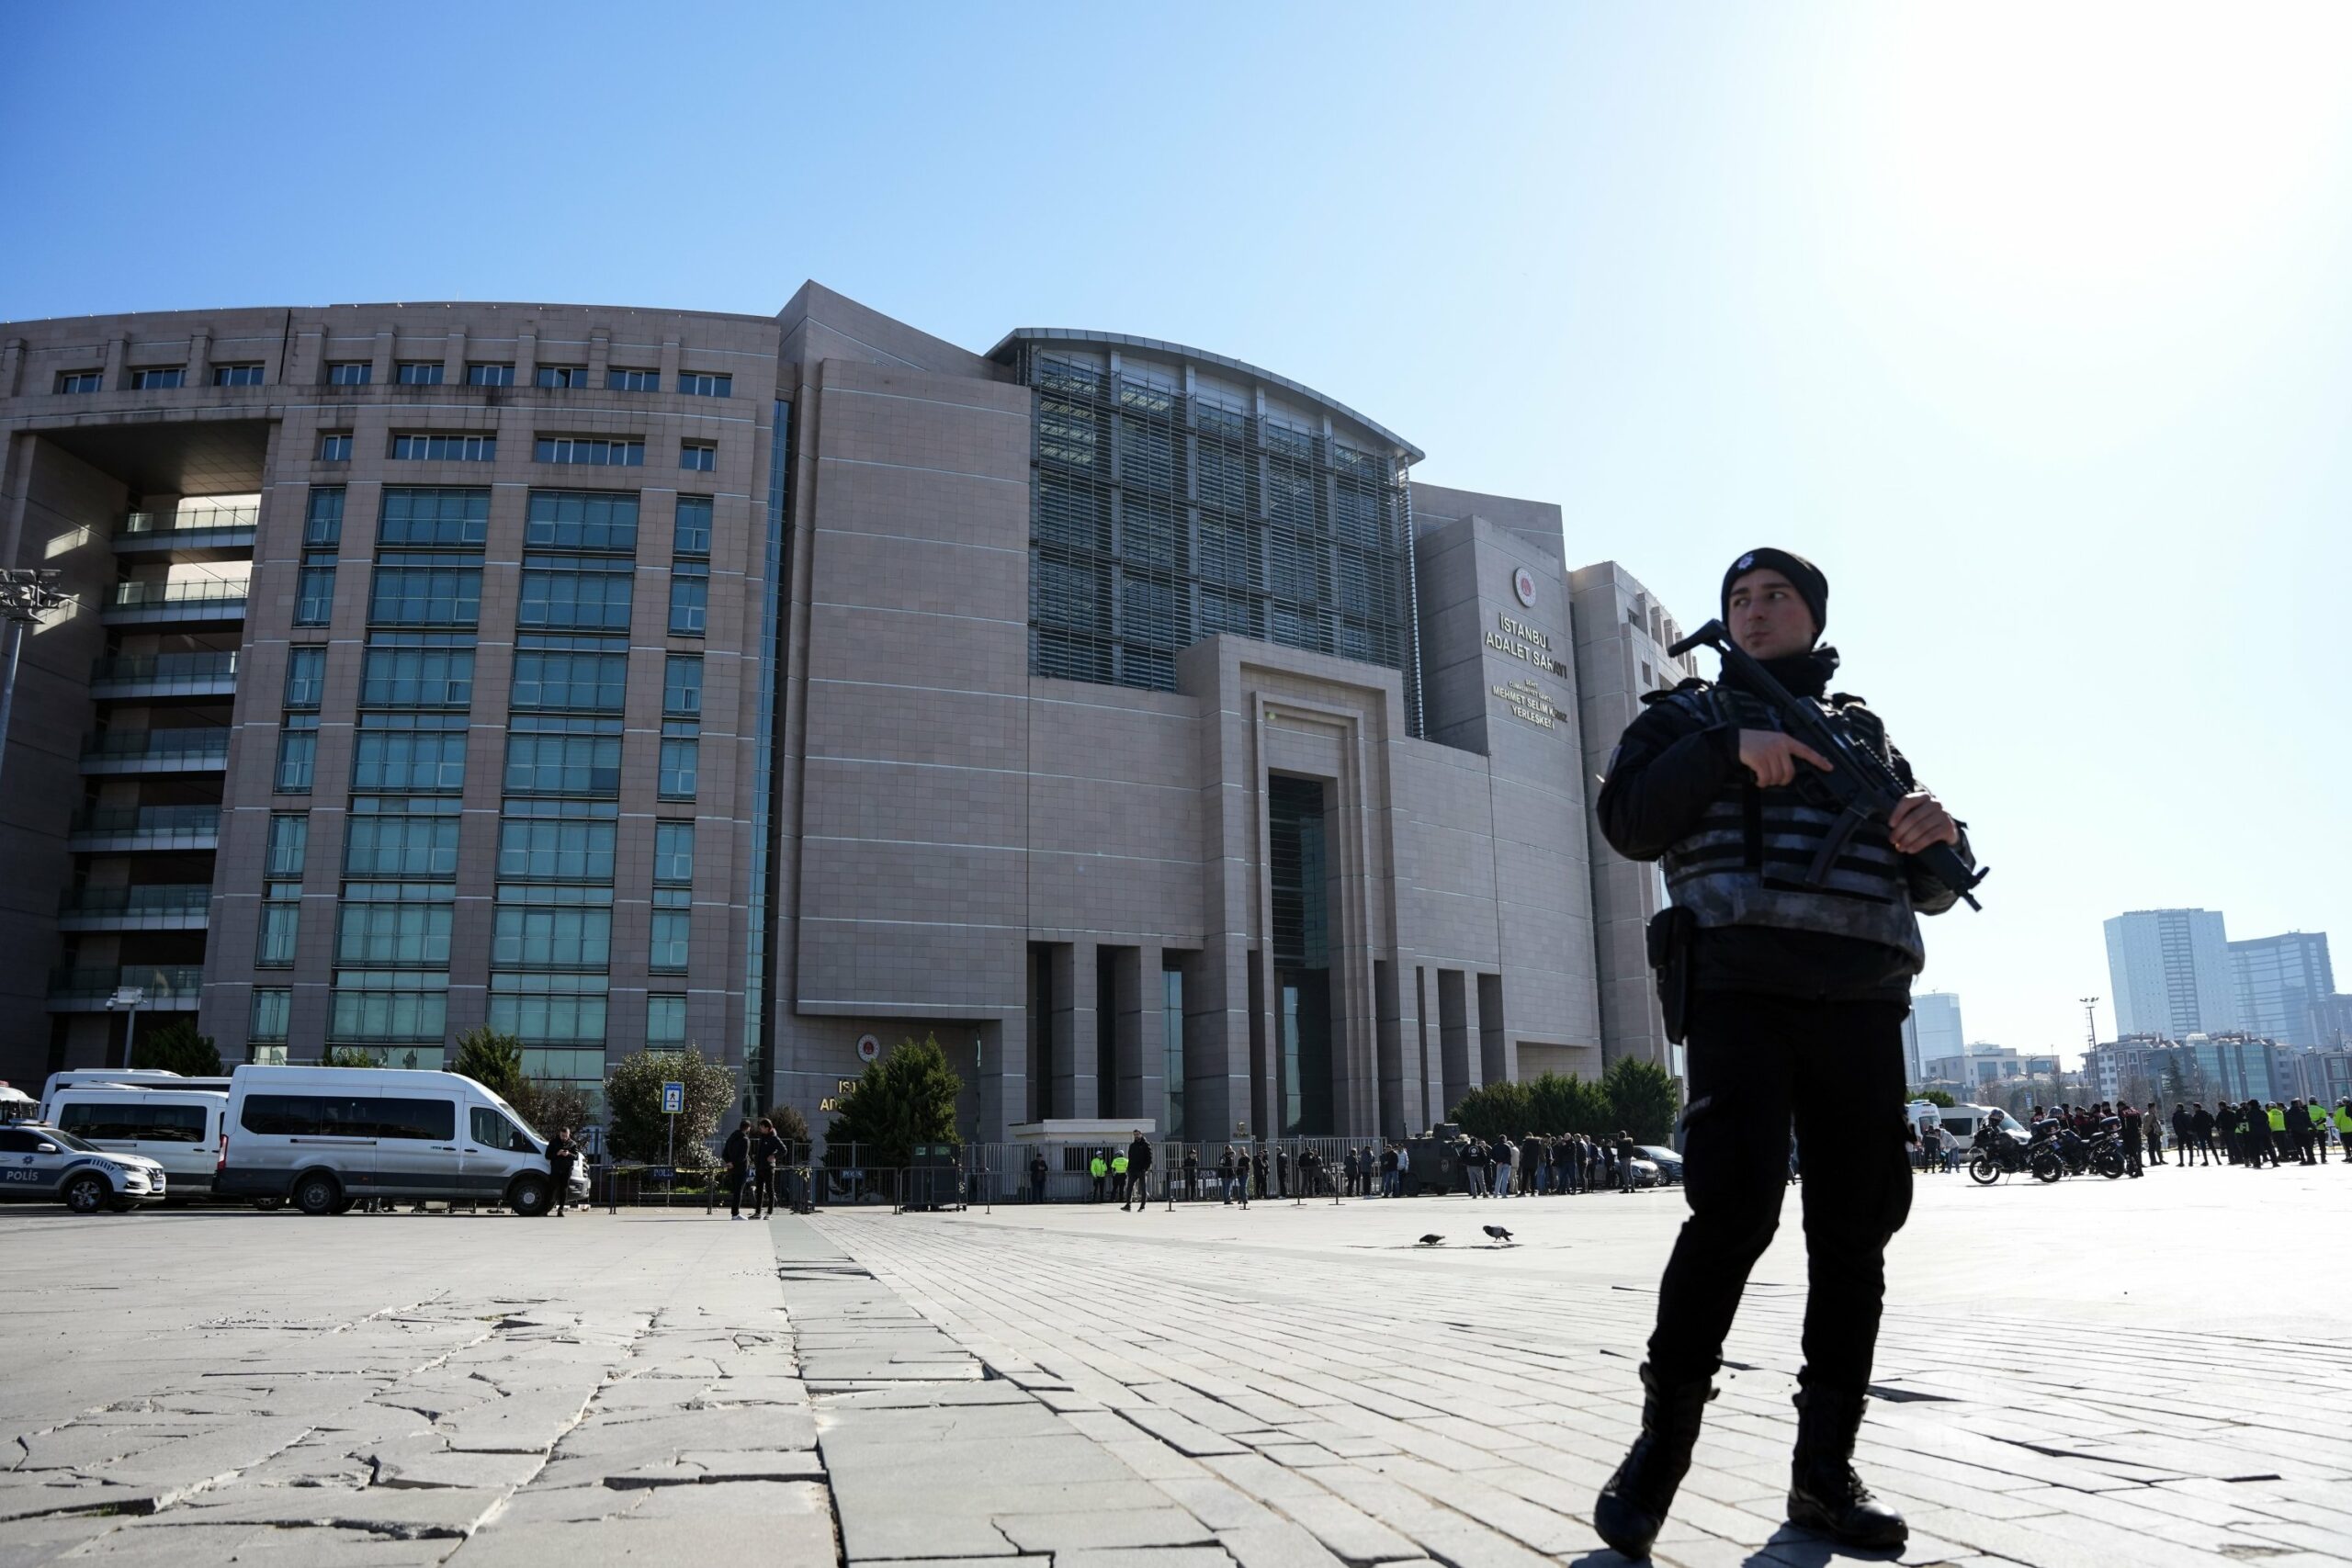 90 te dyshuar jane arrestuar ne lidhje me sulmin ne gjykaten e stambollit